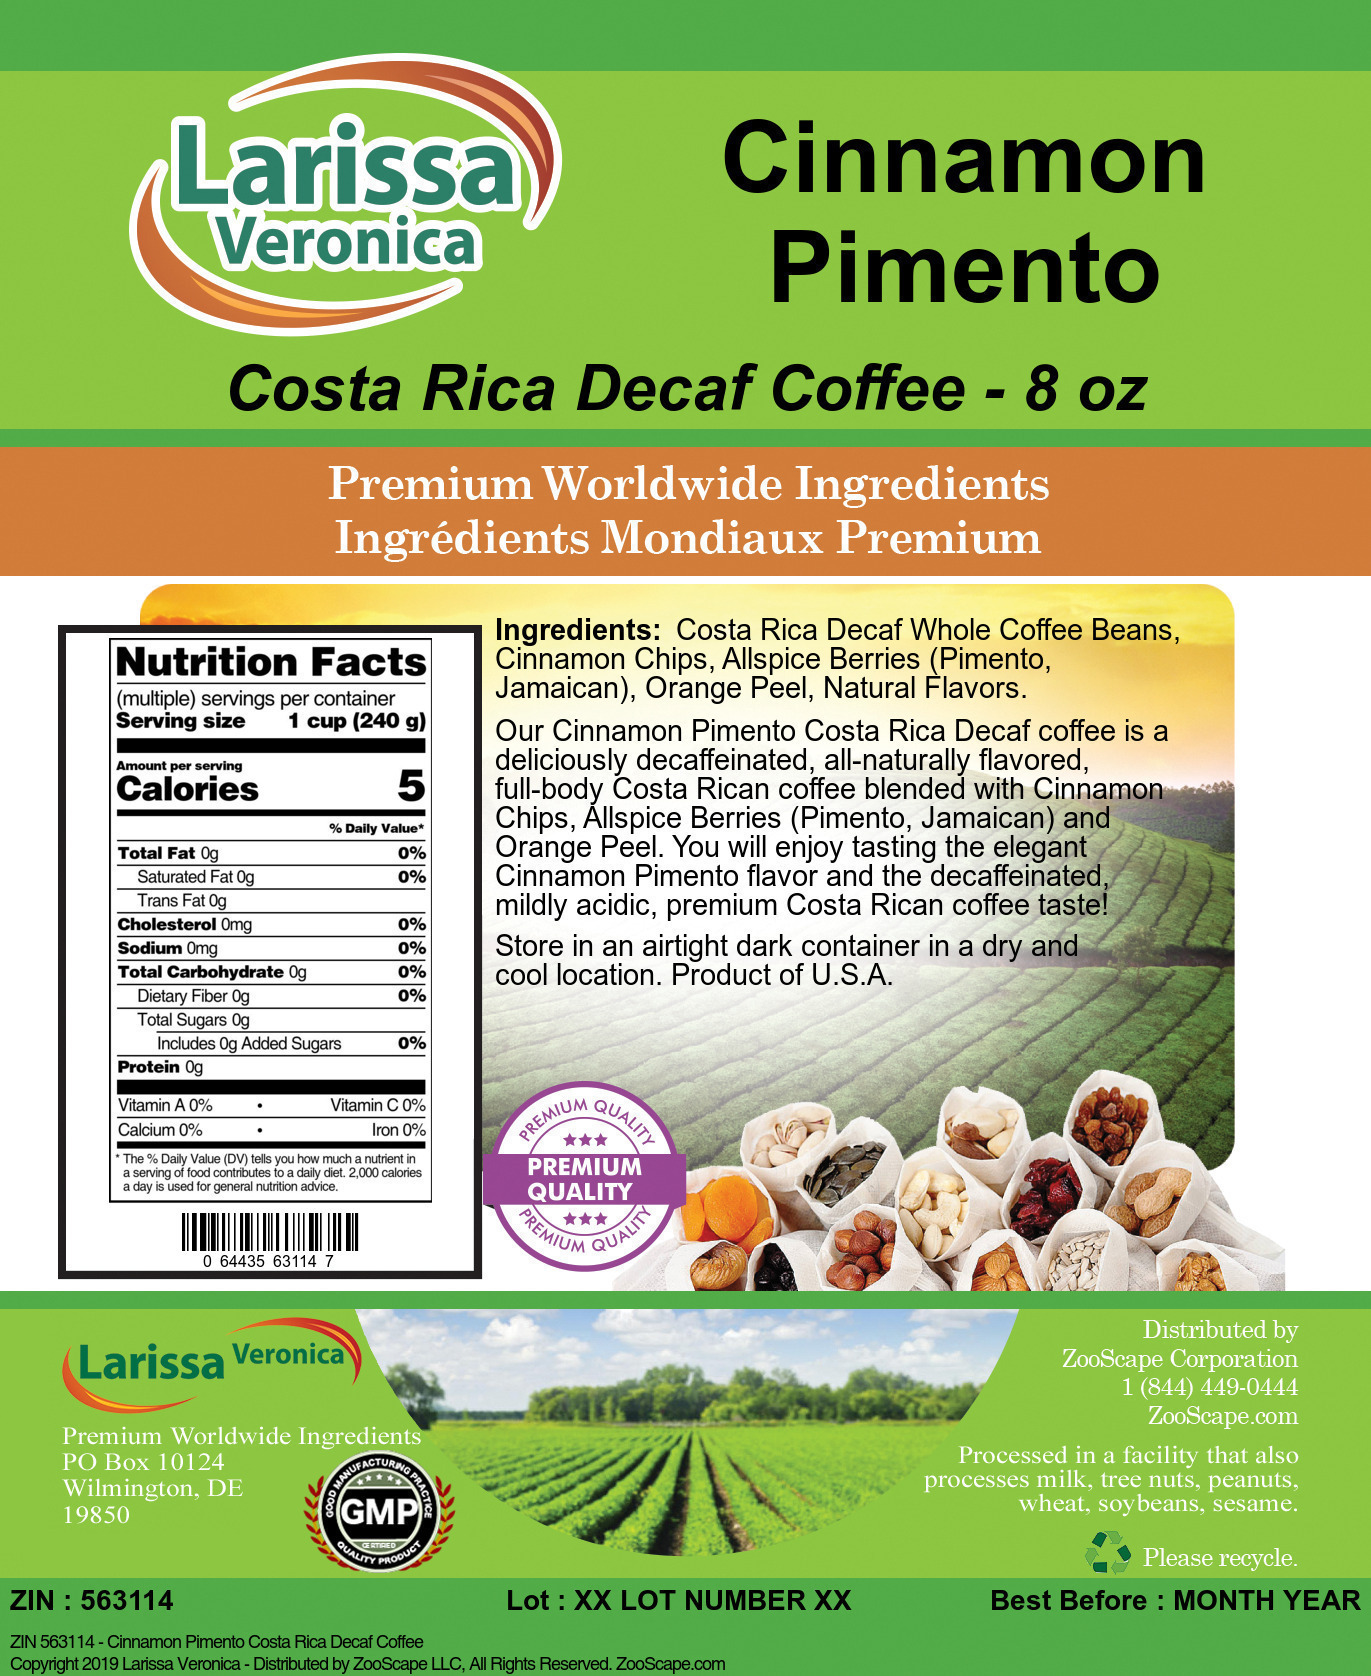 Cinnamon Pimento Costa Rica Decaf Coffee - Label